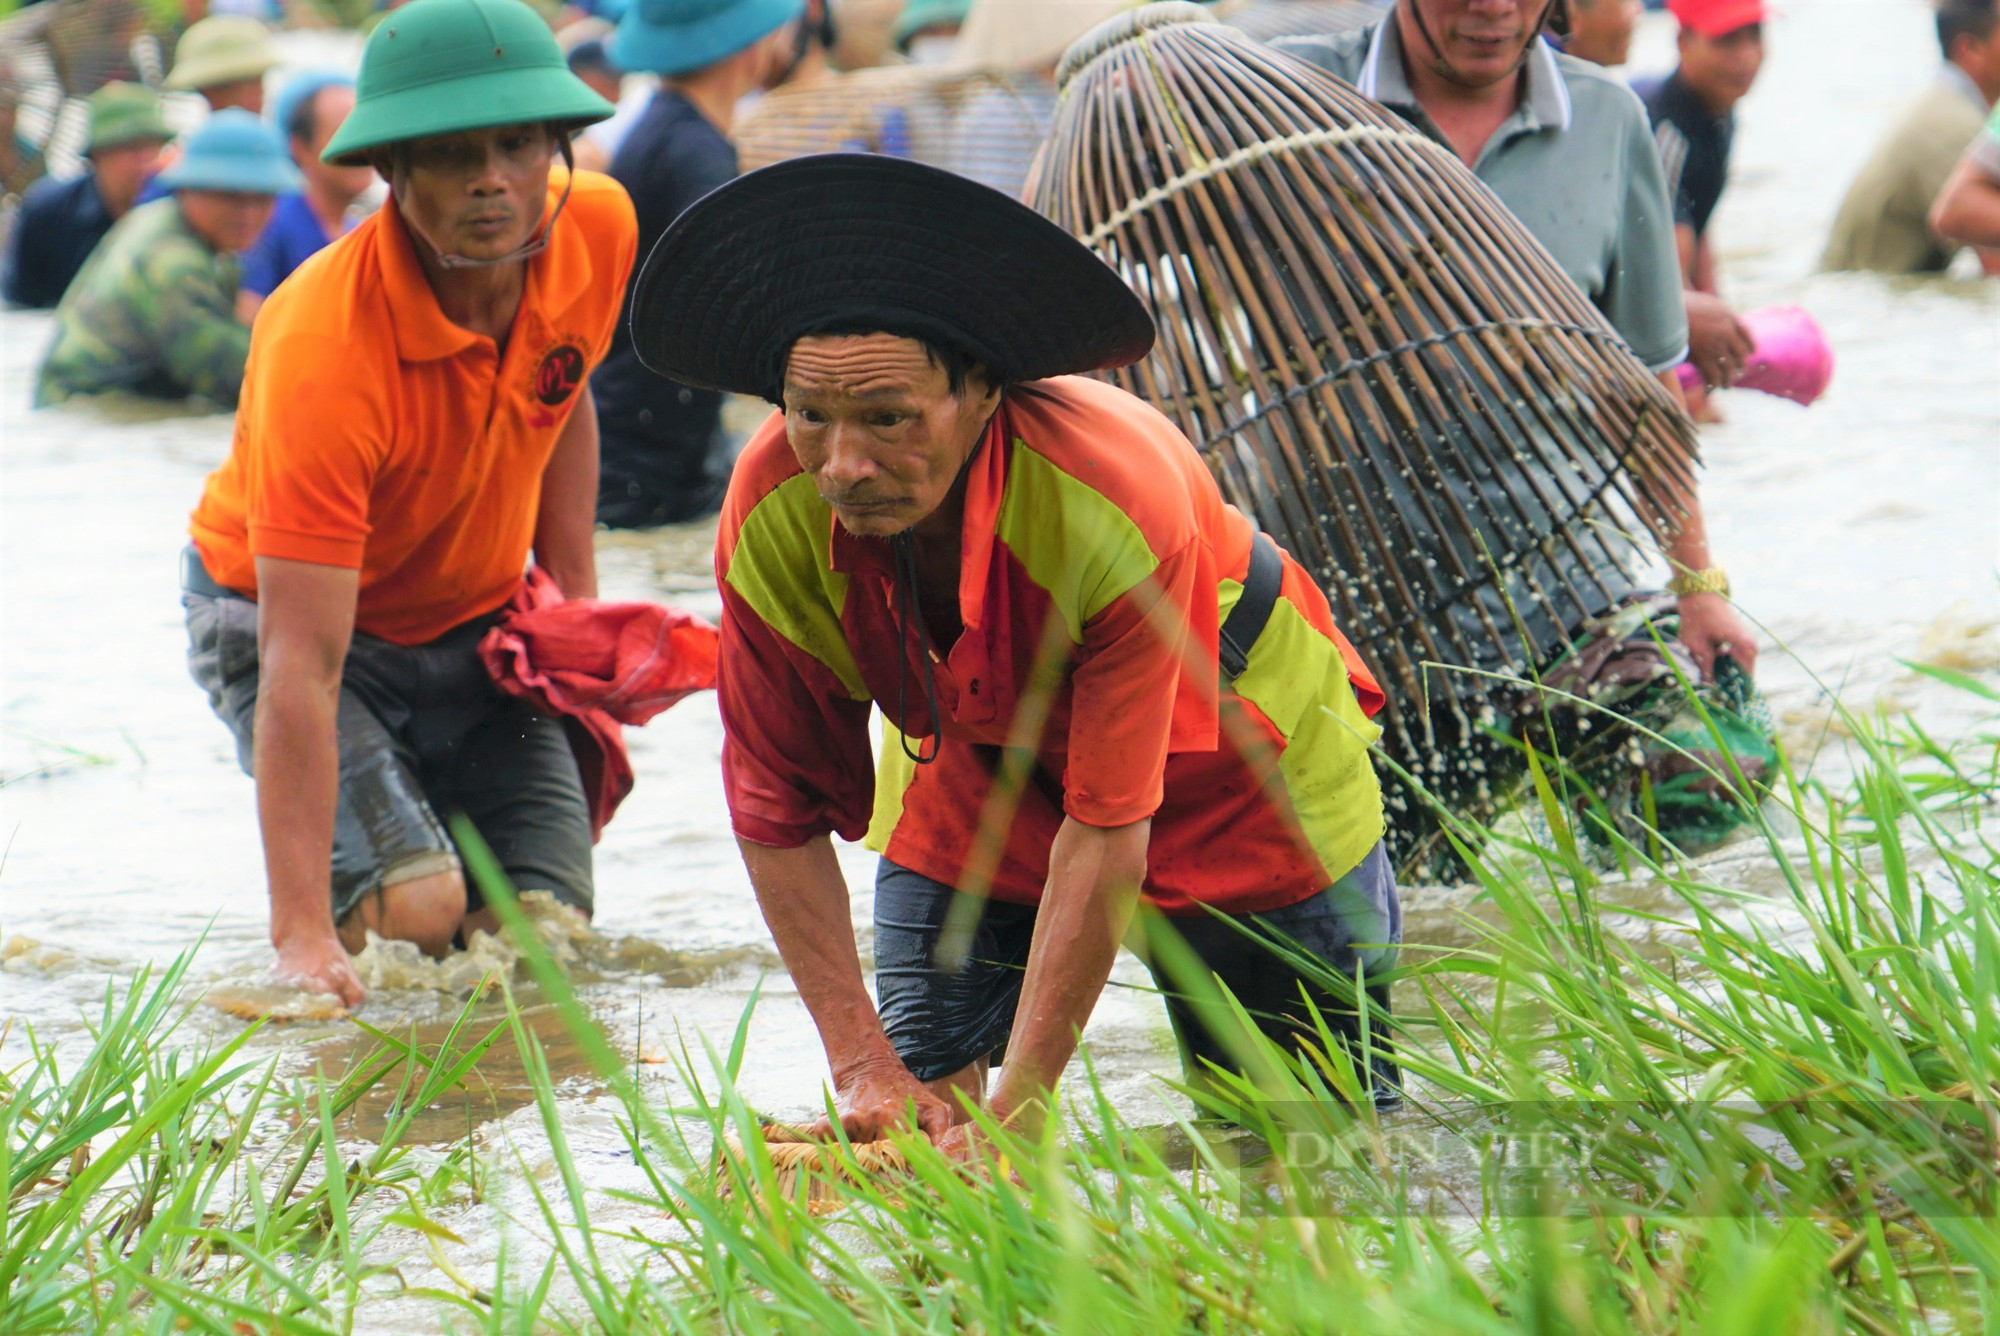 Lễ hội bắt cá Vực Rào tồn tại trên 300 năm ở Hà Tĩnh bắt nguồn từ đâu? - Ảnh 4.